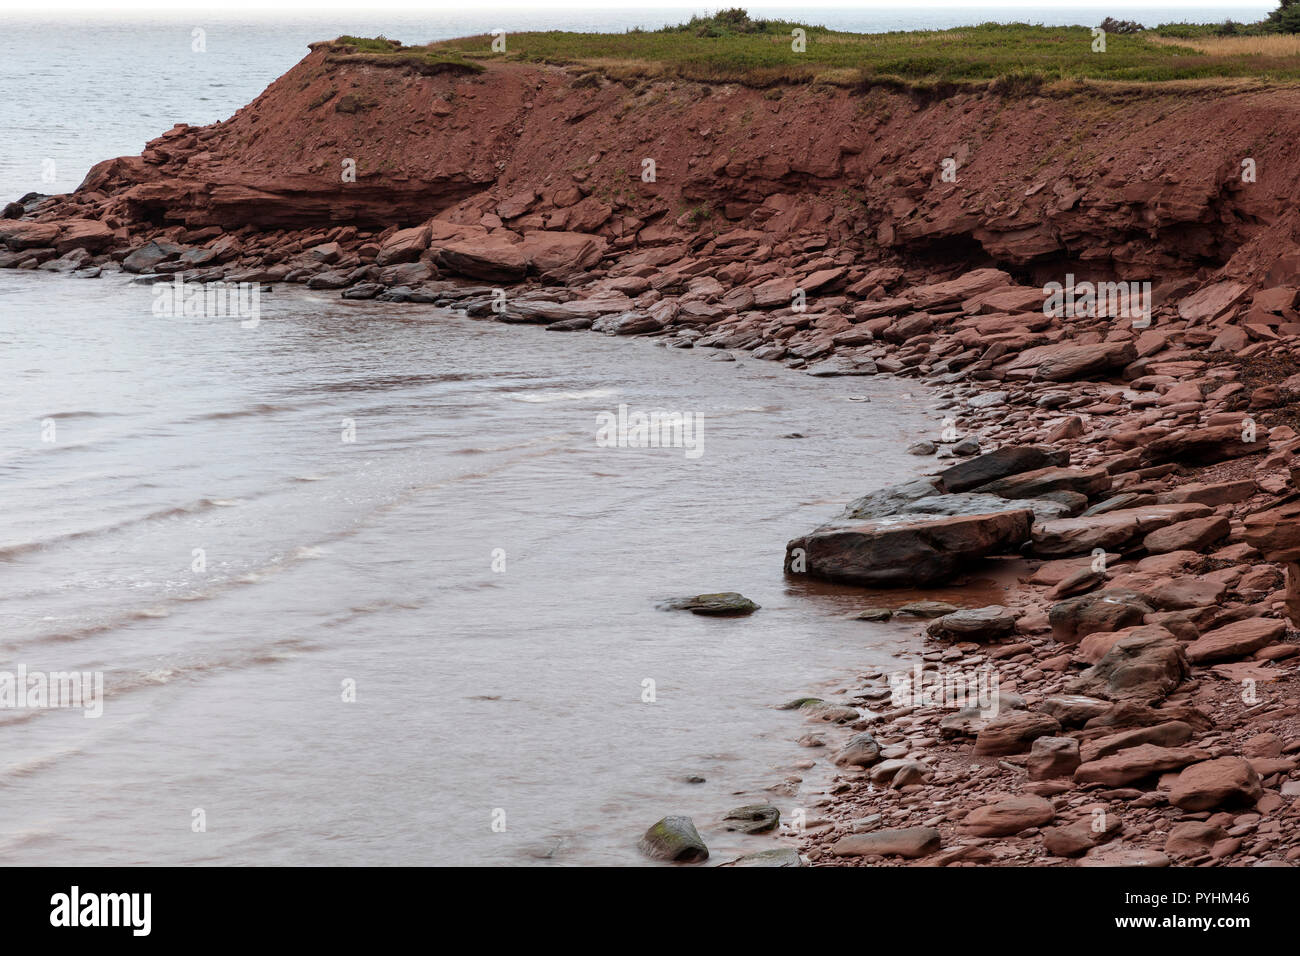 Rosso scogliere di arenaria, spiaggia, bassa marea, golfo di St Lawrence, Prince Edward Island, Canada, da James D. Coppinger/Dembinsky Foto Assoc Foto Stock